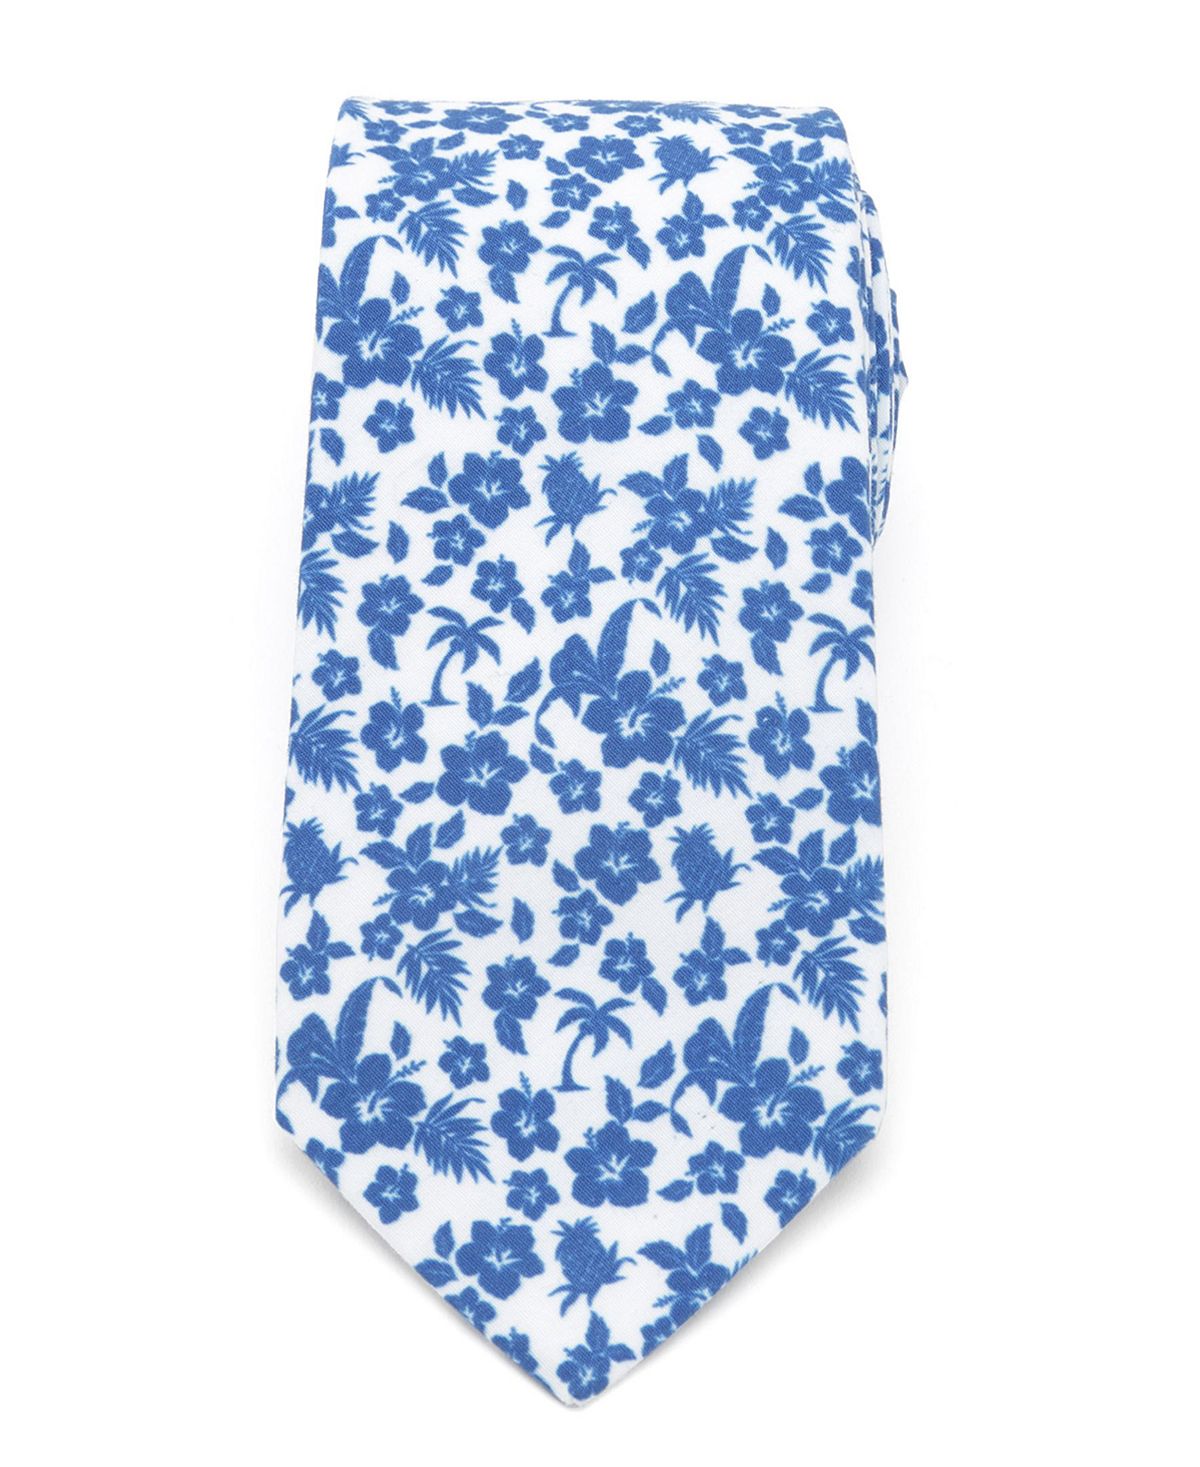 Мужской синий галстук в тропическом стиле Cufflinks Inc. мужской галстук fleur de lis cufflinks inc